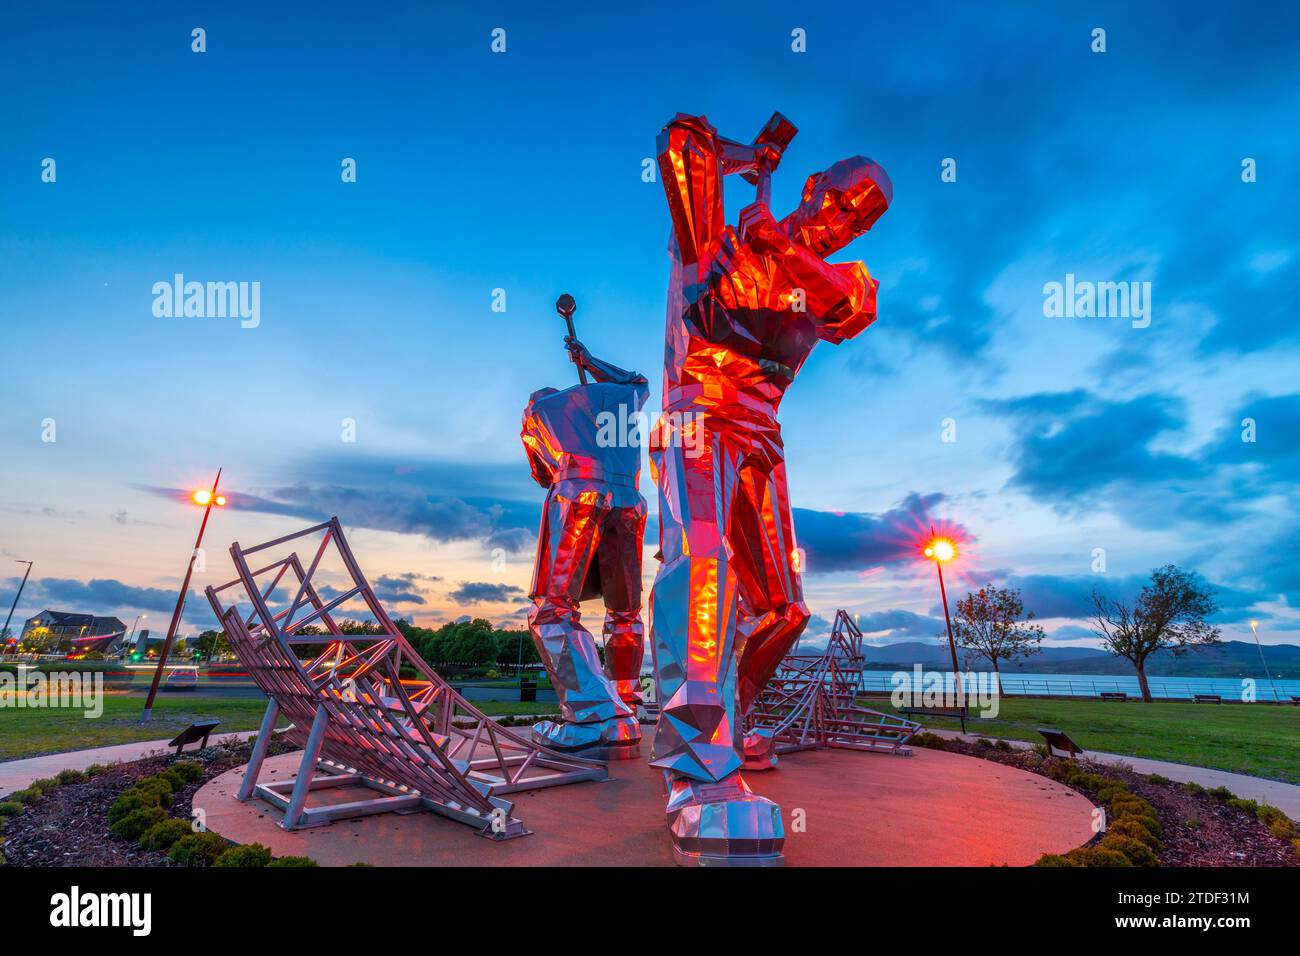 The Shipbuilders of Port Glasgow statues, Coronation Park, Port Glasgow, Écosse, Royaume-Uni, Europe Banque D'Images